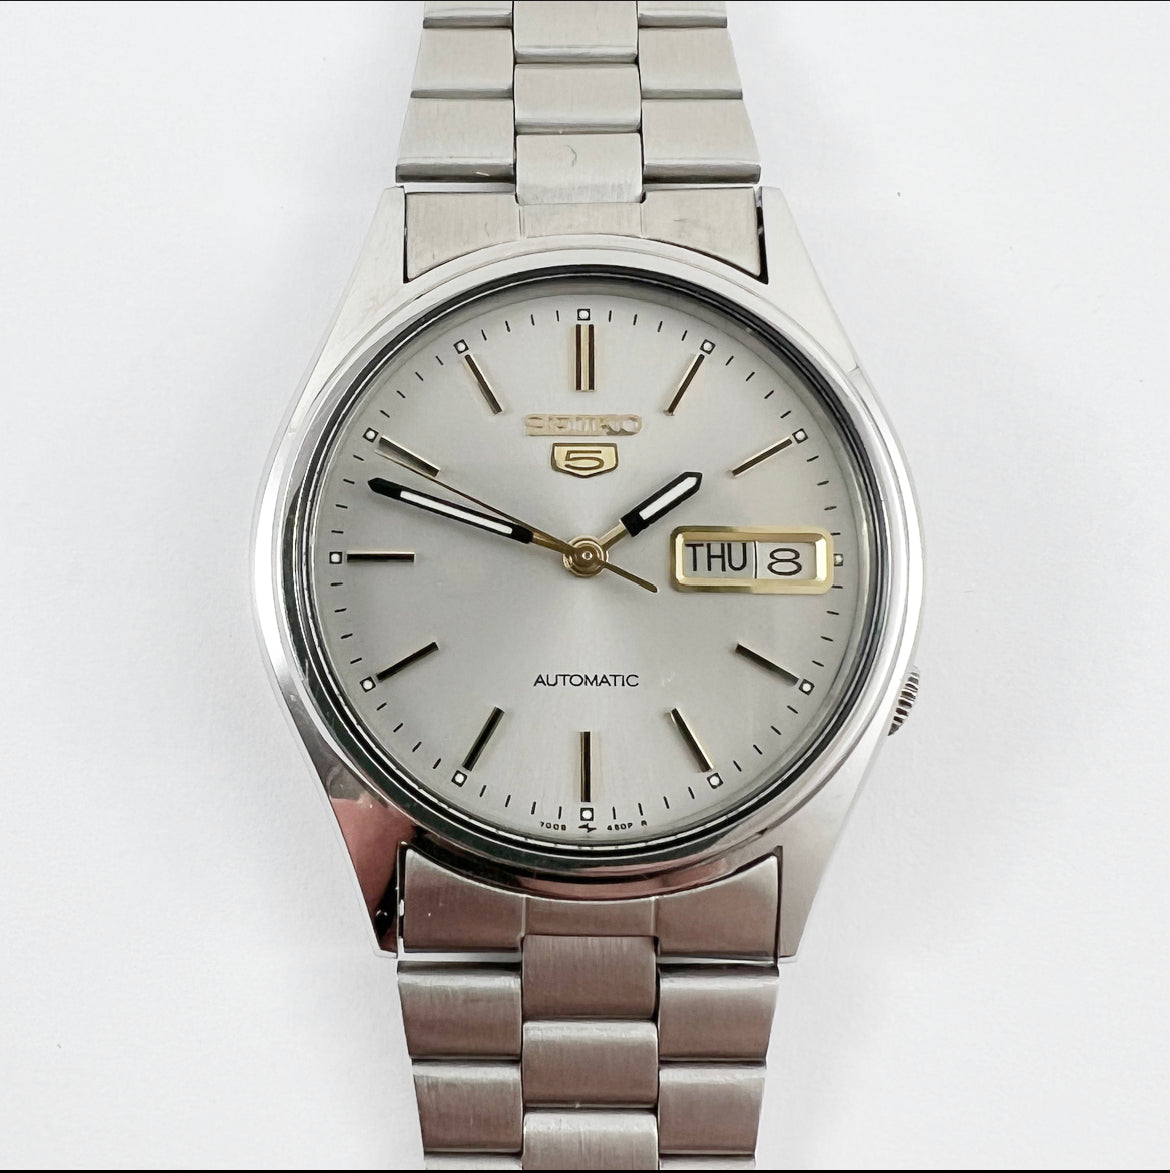 Seiko 7009-3100 Automatic – Mornington Watches